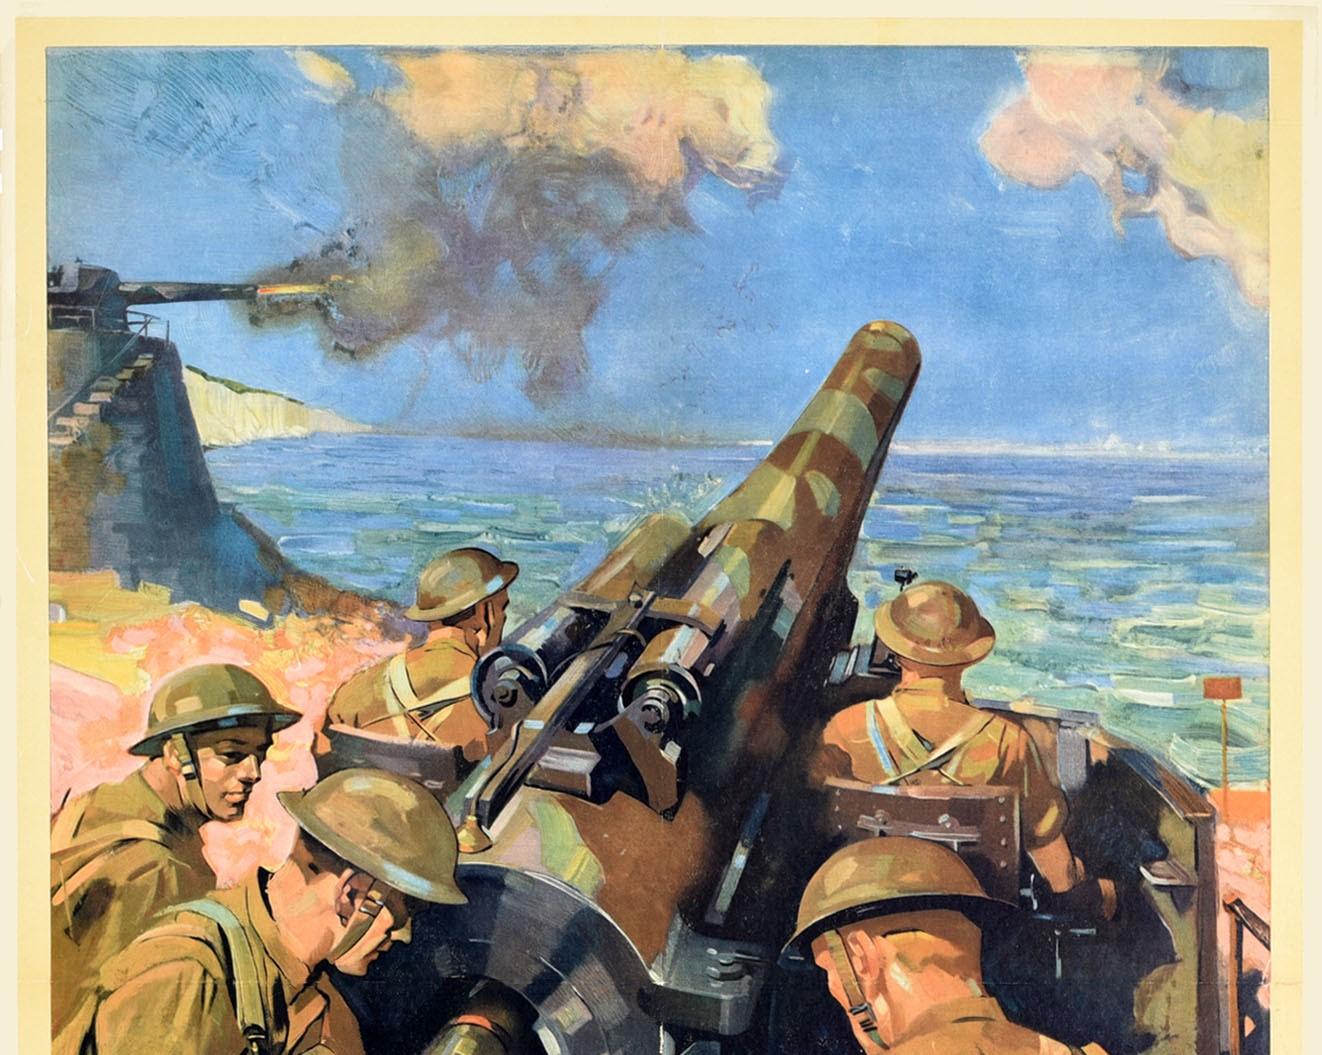 Original-Propagandaposter aus dem Zweiten Weltkrieg - Back Them Up! - mit einem dramatischen Kunstwerk des bekannten britischen Künstlers Terence Tenison Cuneo (1907-1996), das fünf Soldaten in Uniform zeigt, die vom Ufer aus eine Kanone laden und